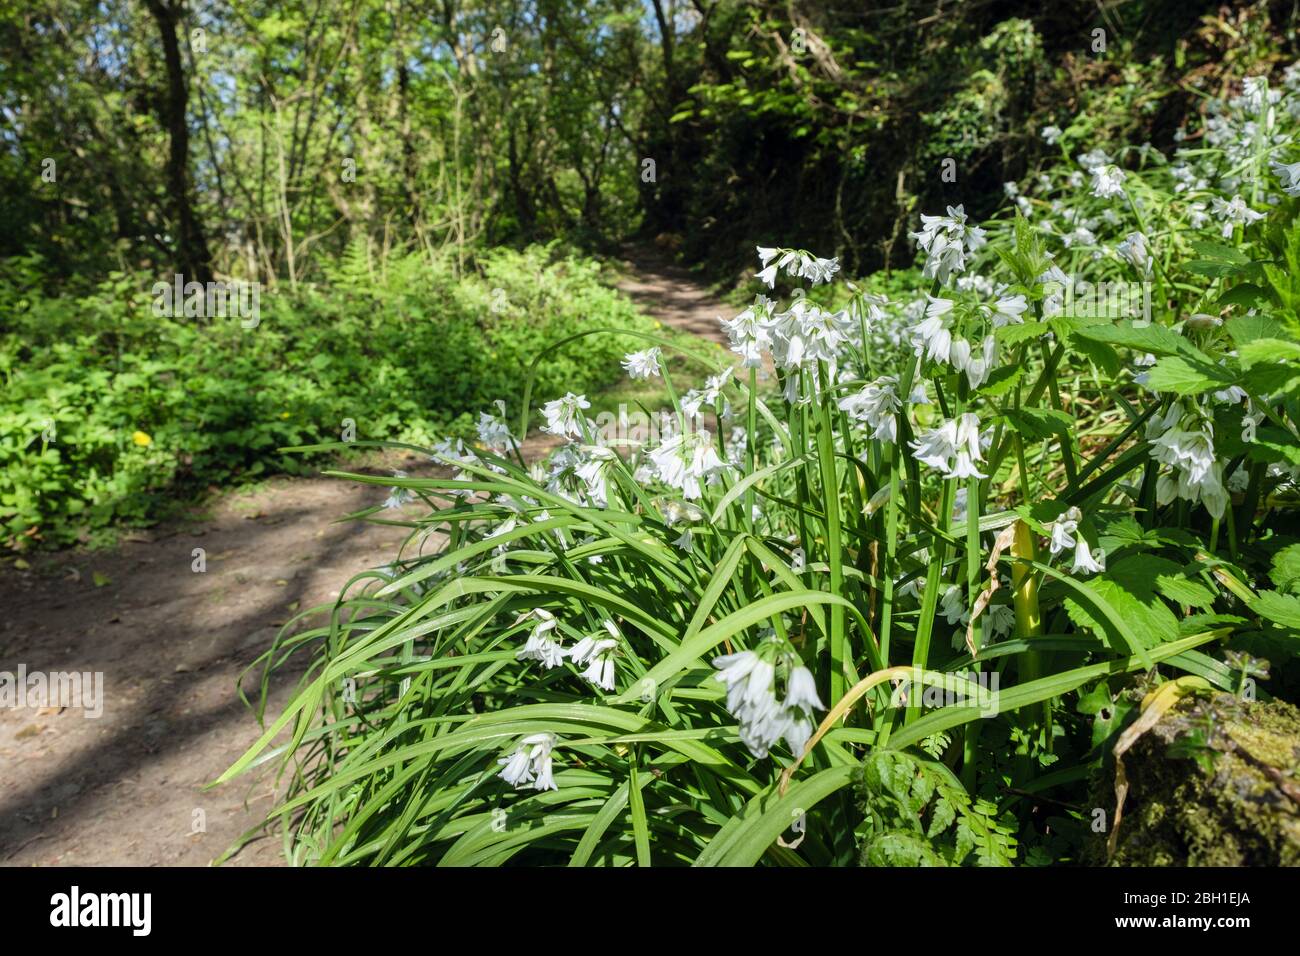 Fleurs blanches de Leek à trois corniches (Allium triquetrum) qui poussent sauvage à côté d'un sentier boisé au printemps. Bois de gypse Benllech Isle of Anglesey Pays de Galles Royaume-Uni Banque D'Images